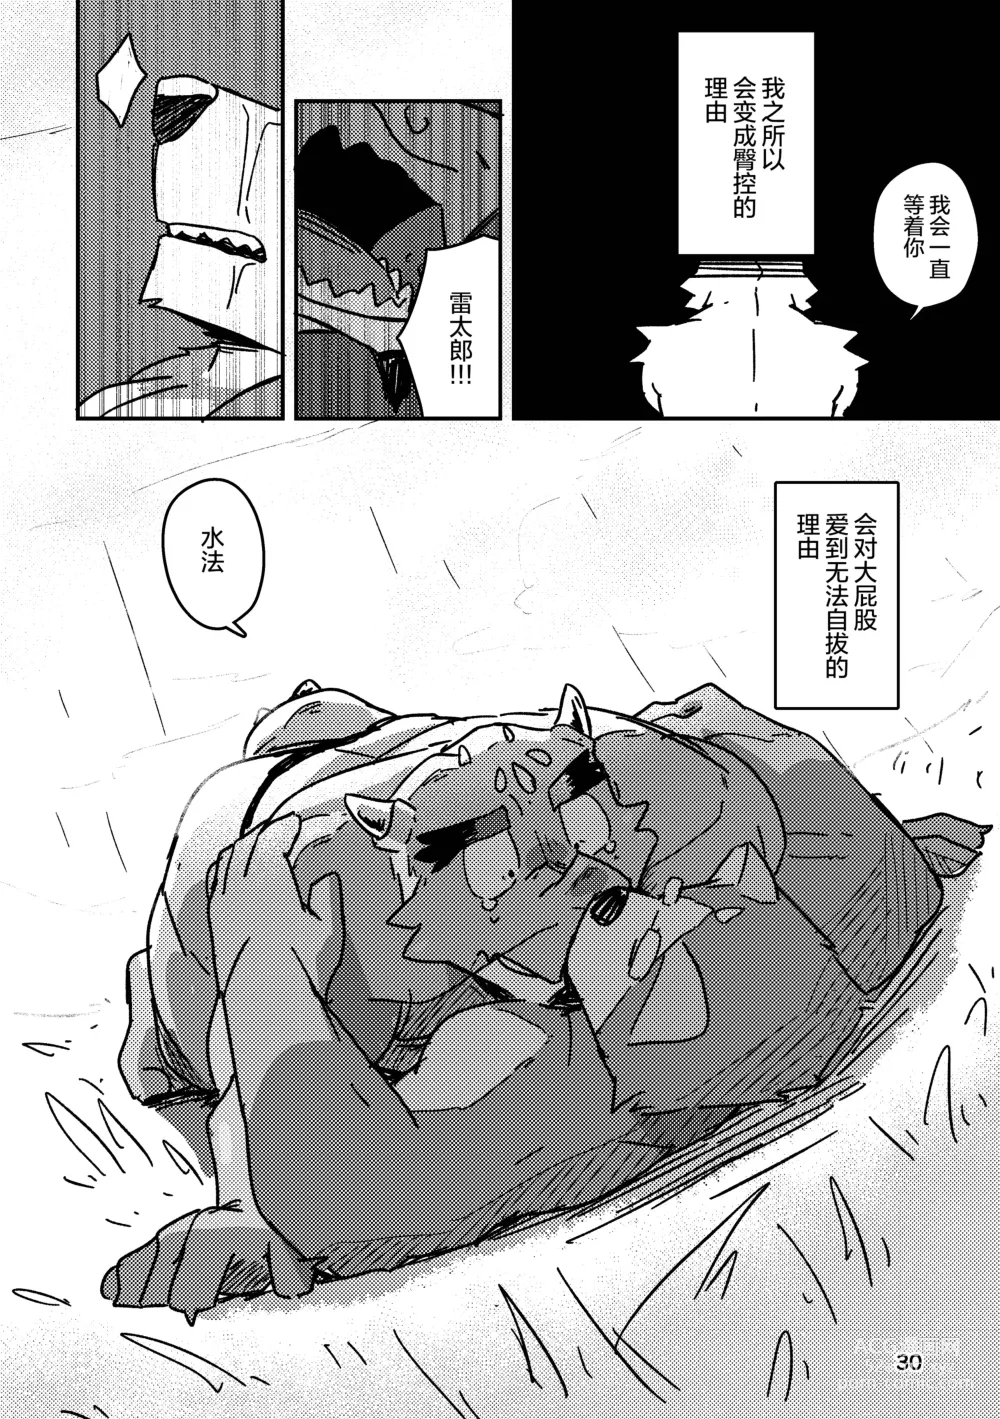 Page 30 of doujinshi 约定的龙穴